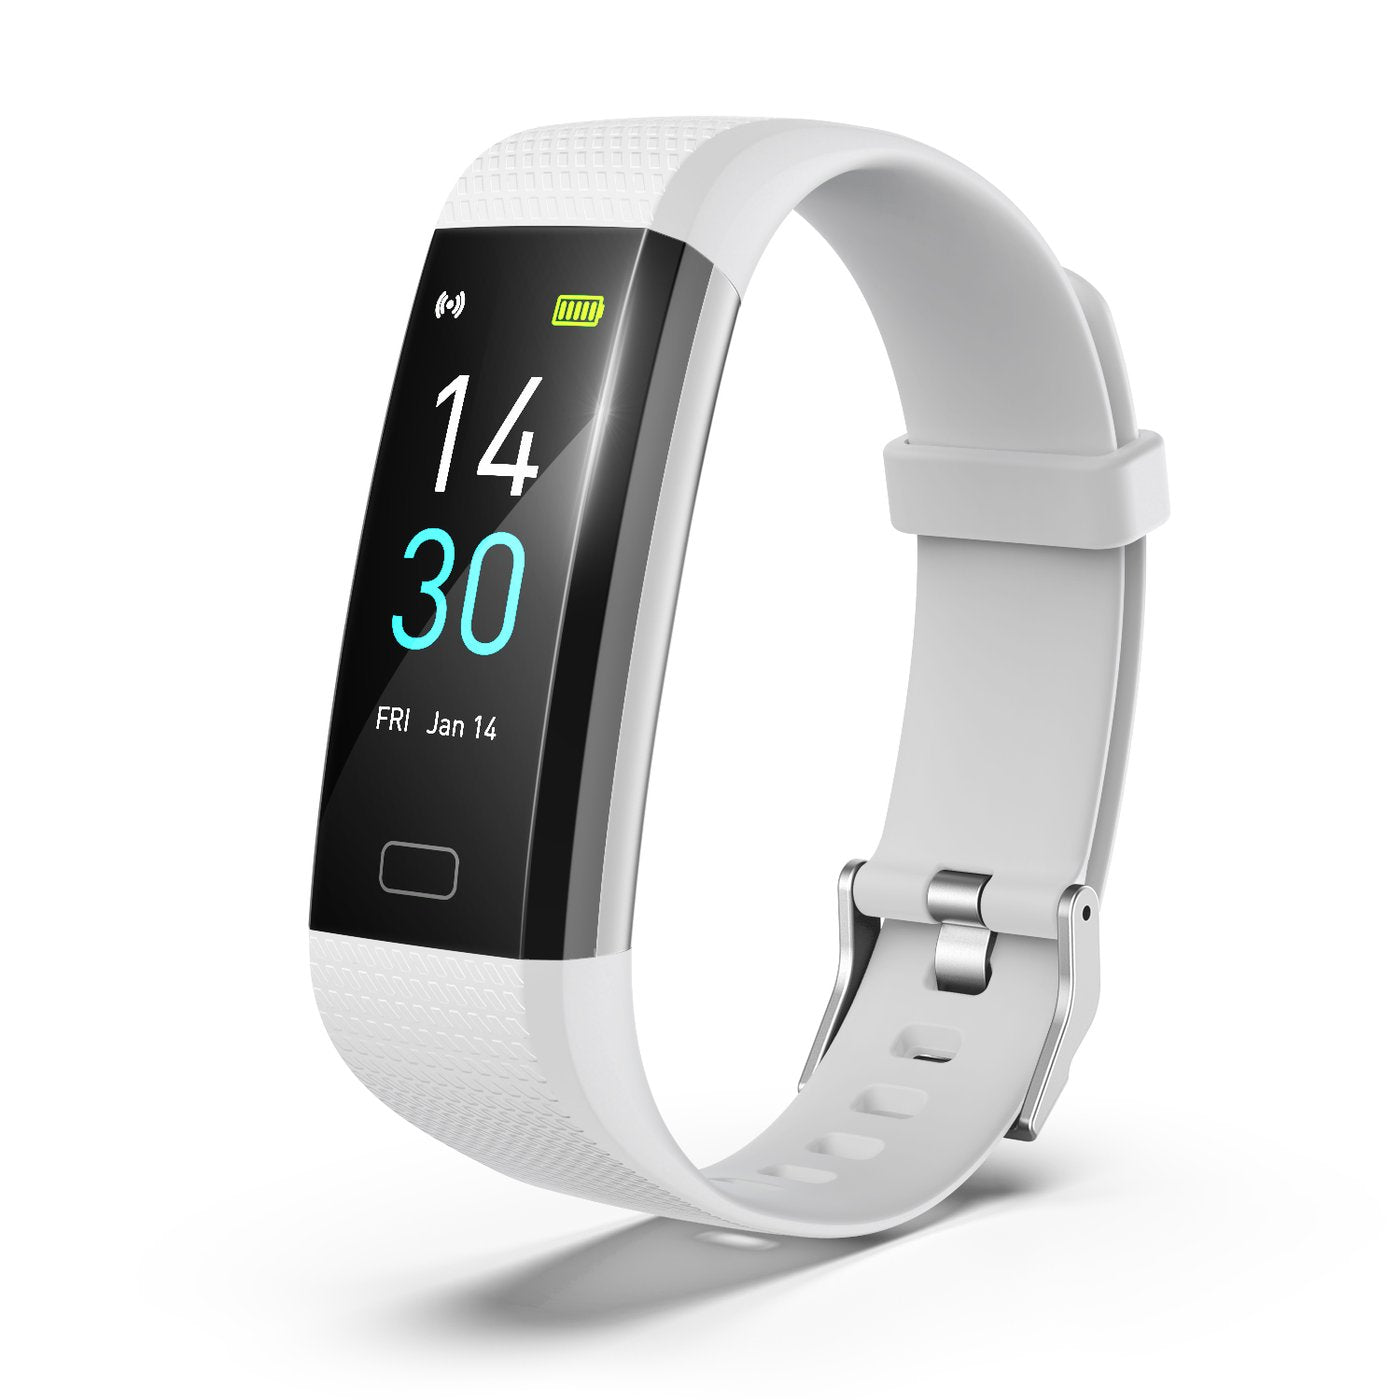 Hi5 S5 Fitness Bracciale Fitness Tracker Touchscreen IP68 impermeabile Activity Tracker Frequenza cardiaca Movimento e notifica Promemoria